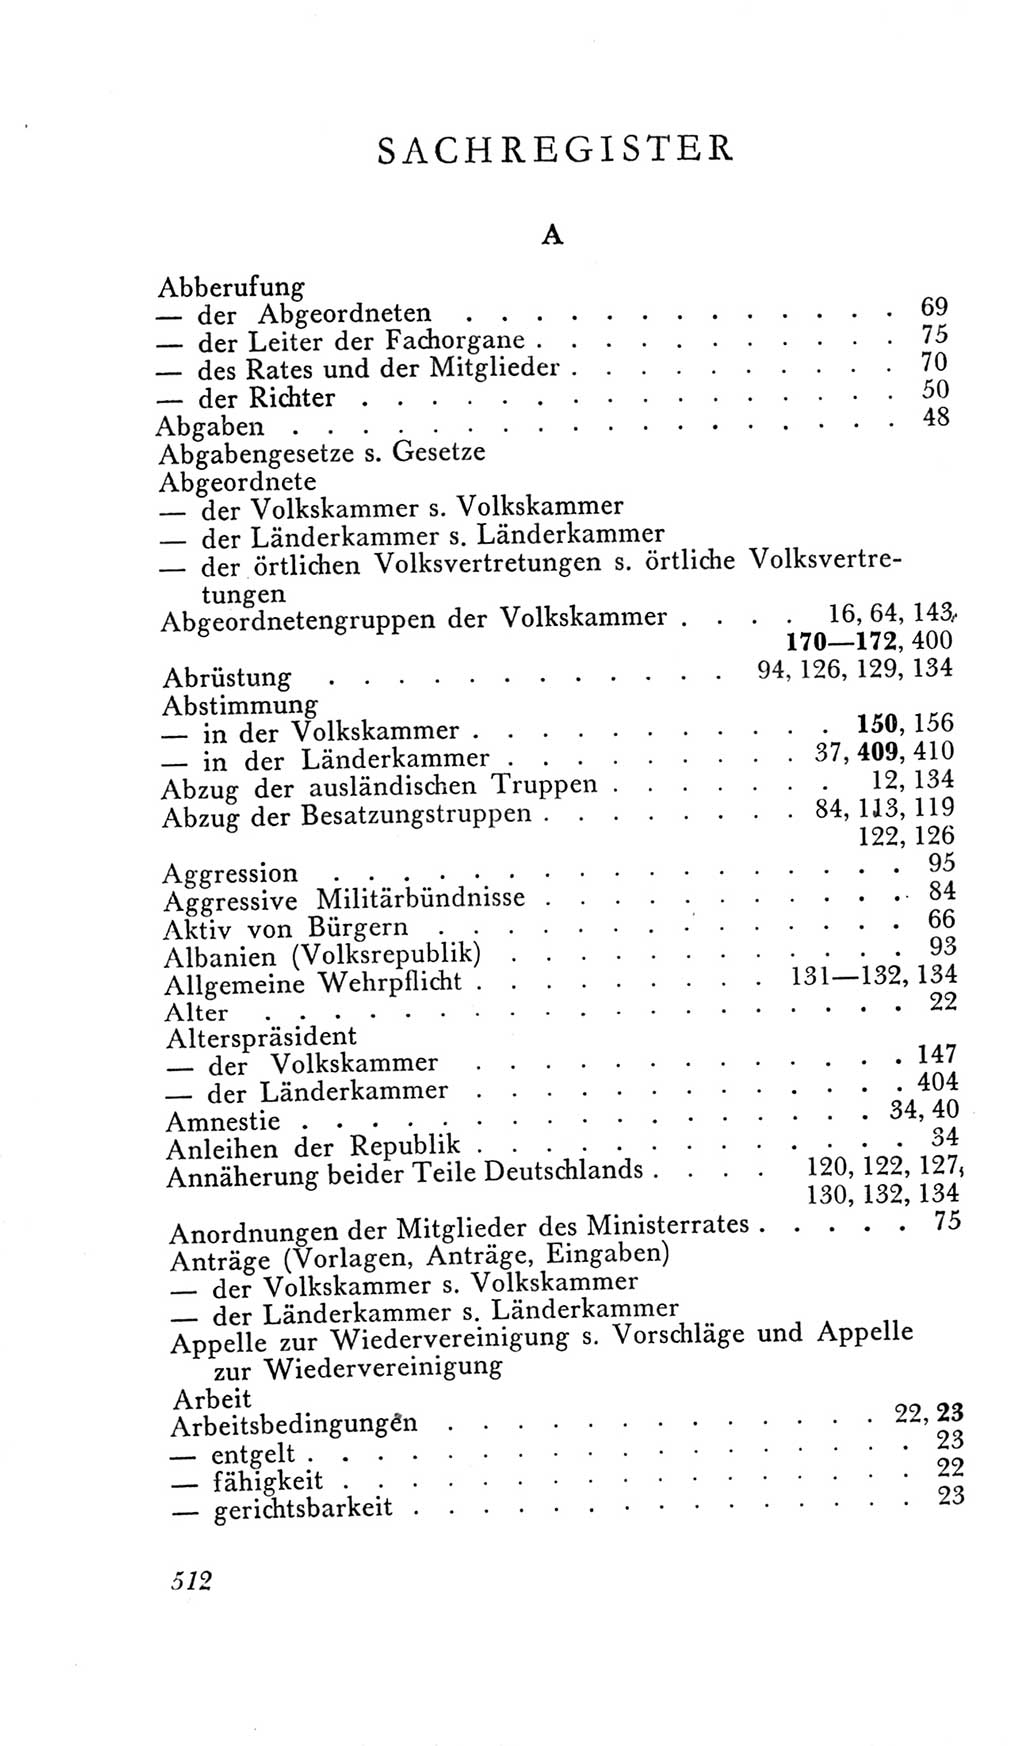 Handbuch der Volkskammer (VK) der Deutschen Demokratischen Republik (DDR), 2. Wahlperiode 1954-1958, Seite 512 (Hdb. VK. DDR, 2. WP. 1954-1958, S. 512)